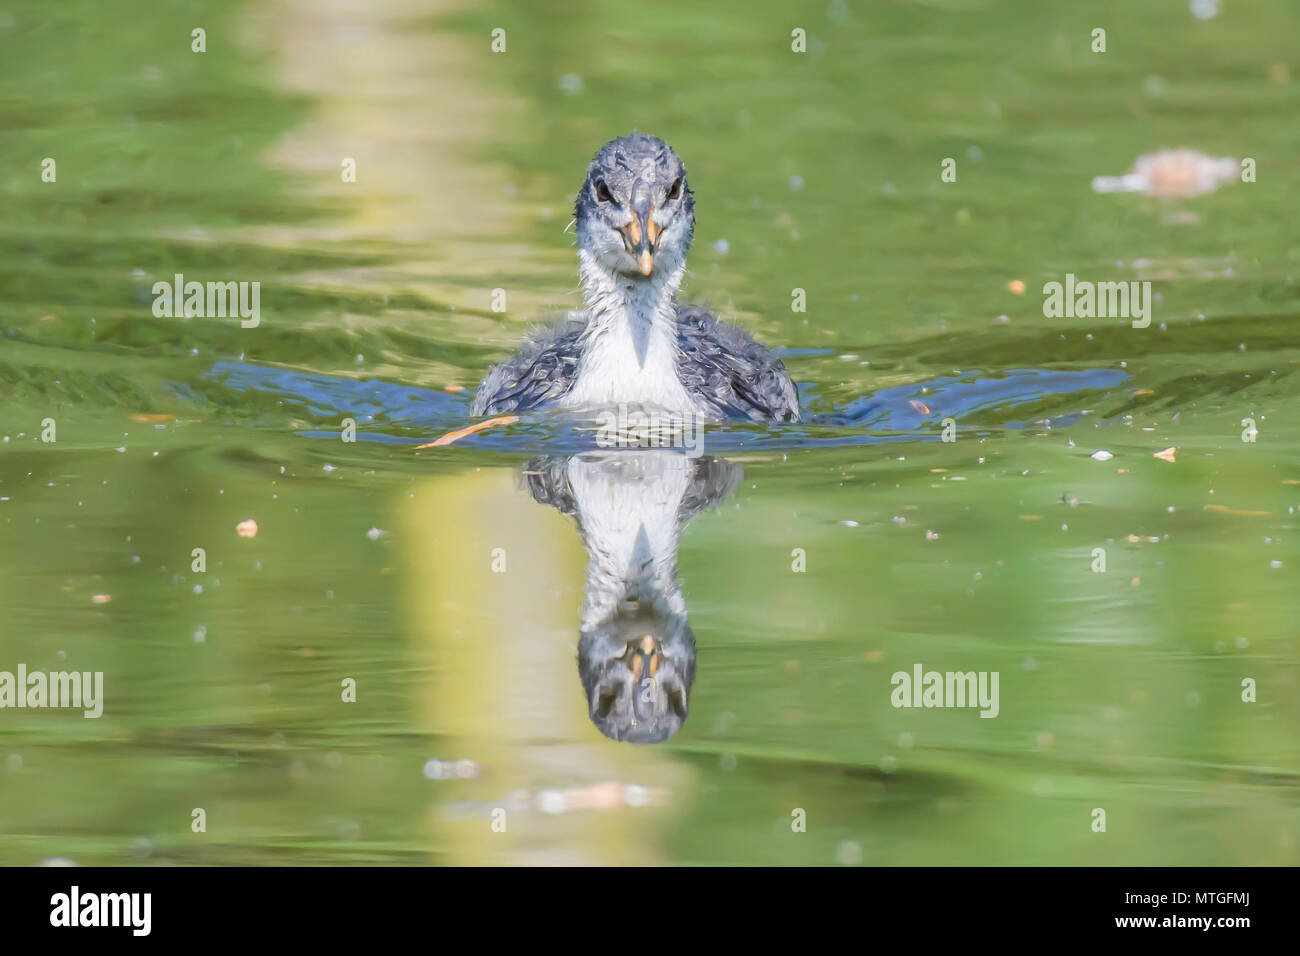 Blässhuhn Youngster schwimmend auf See in Richtung Kamera. Schöne Reflexion der Vogel im Wasser. Natur Uk. Atemberaubende britische Wildlife. Natural World Conservation. Stockfoto